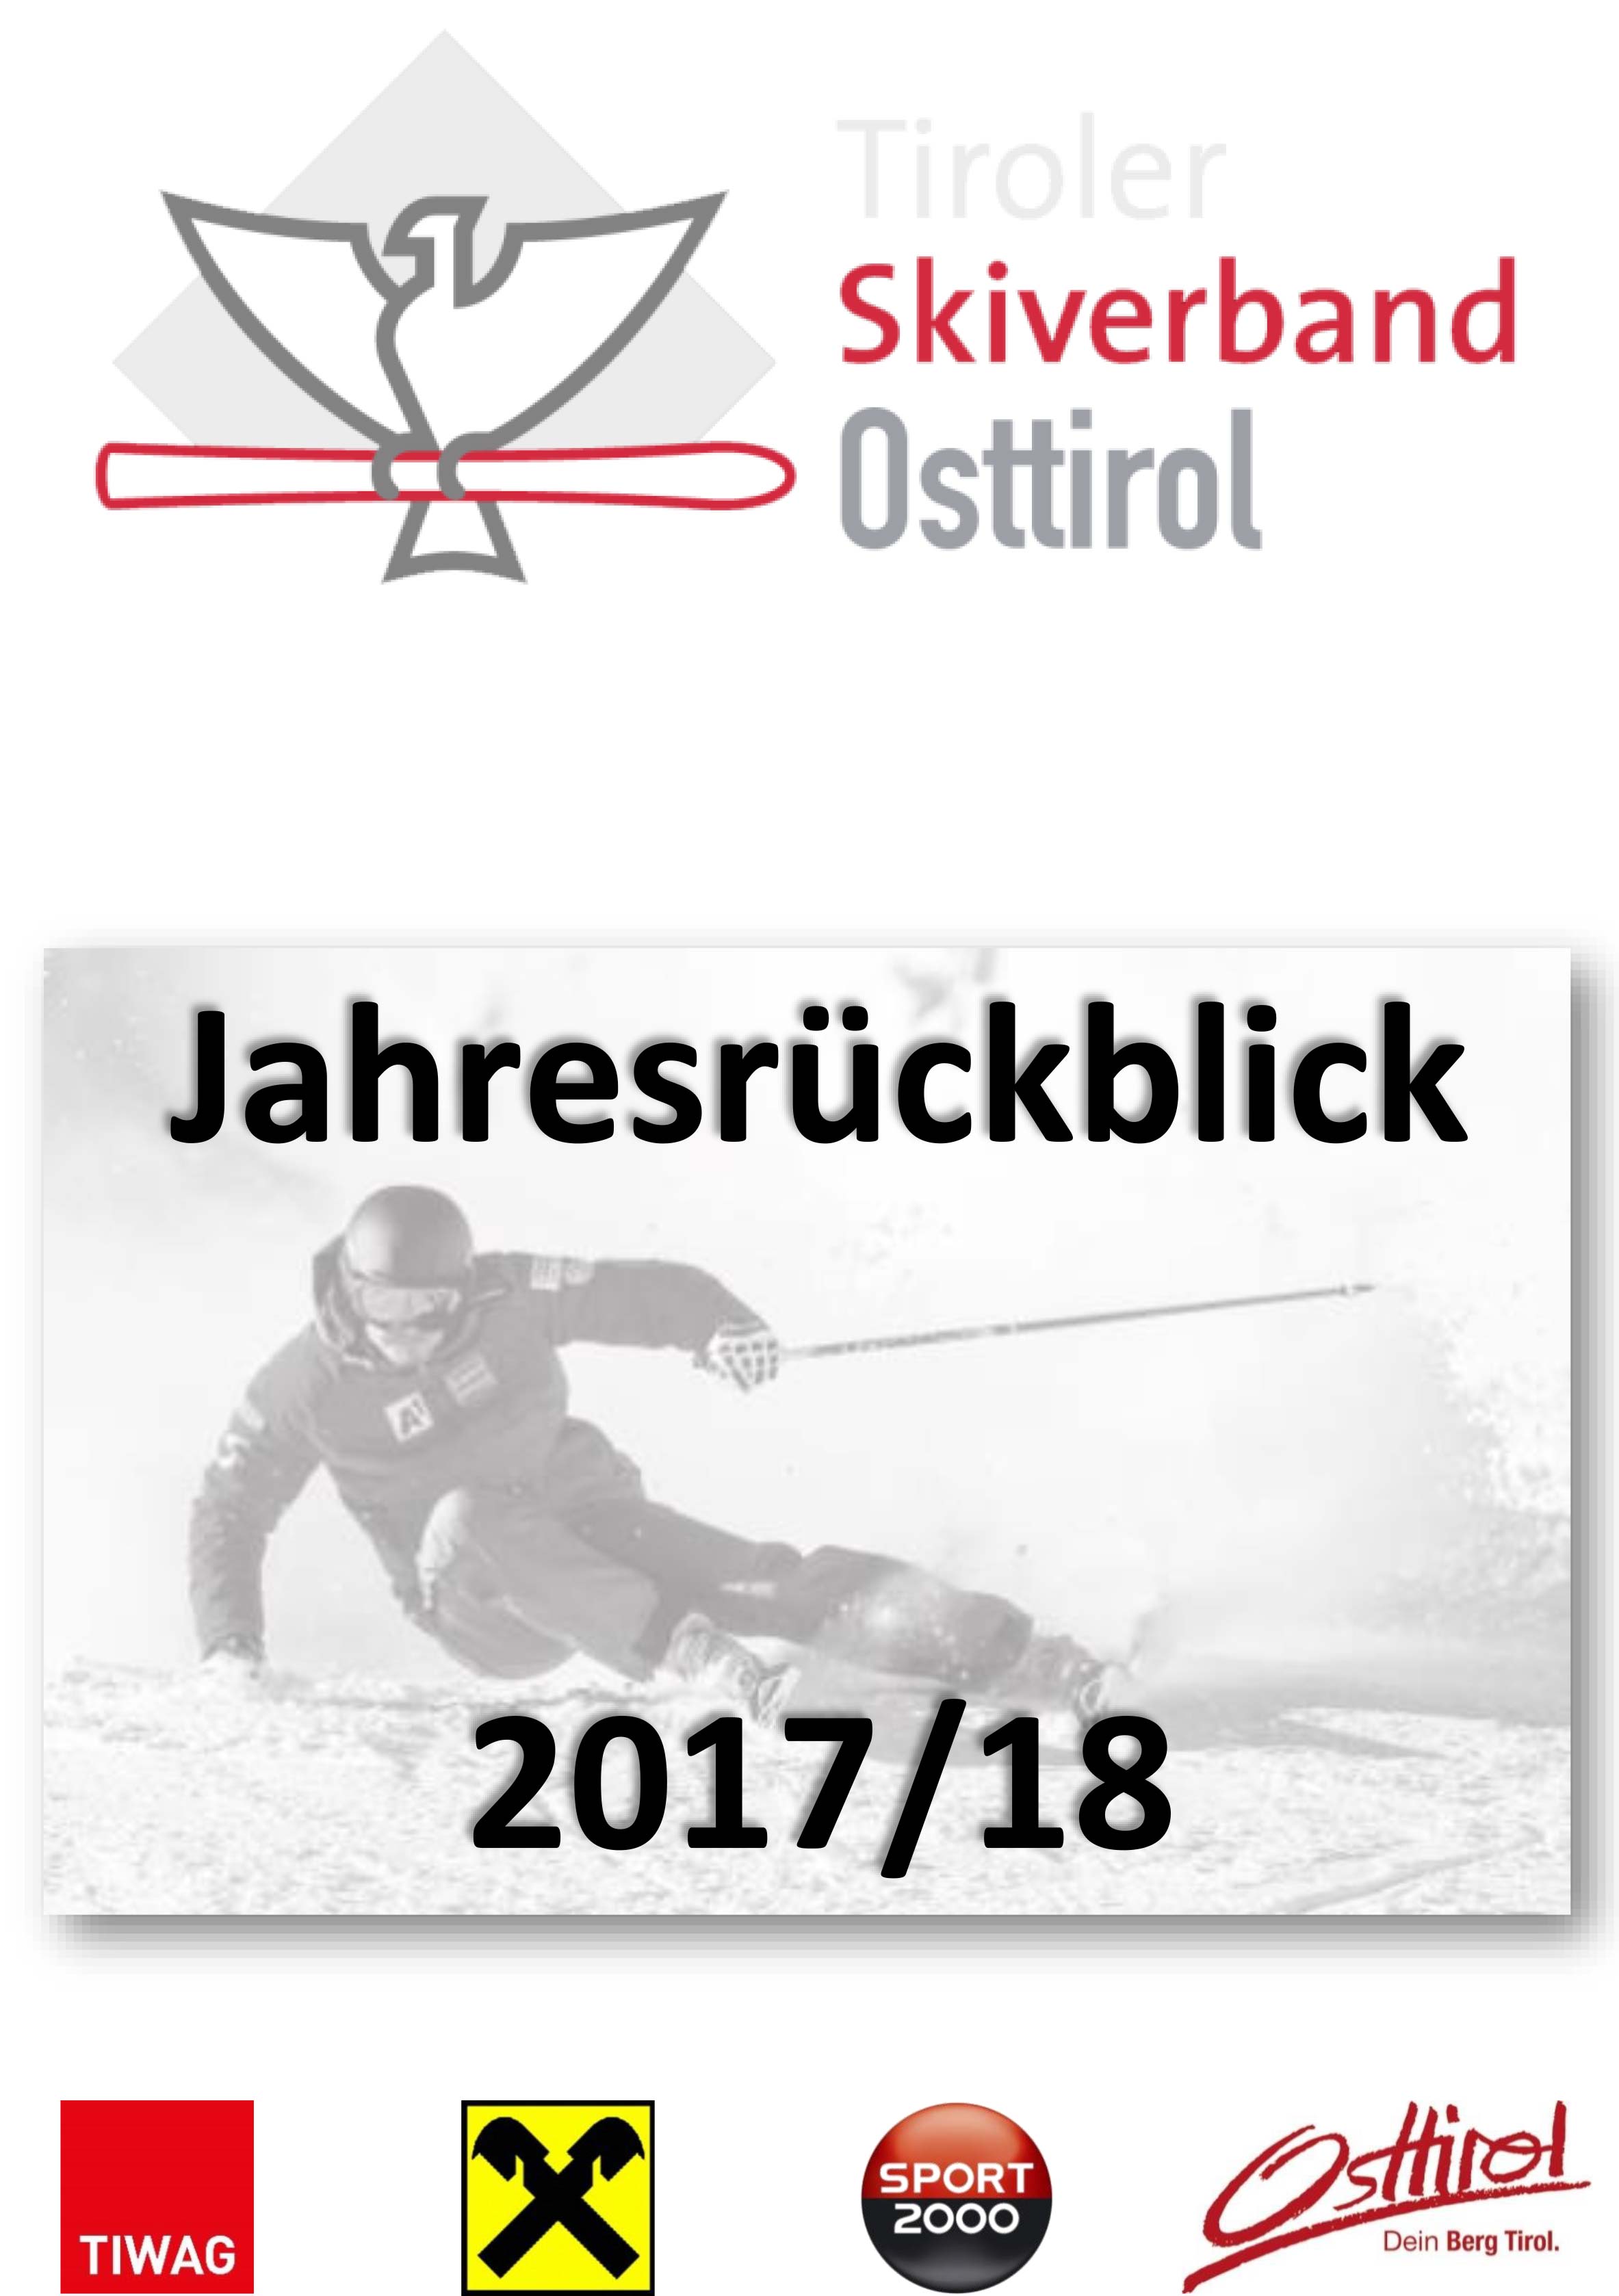 Jahresrückblick-Saison-2017-18-titelbild.jpg